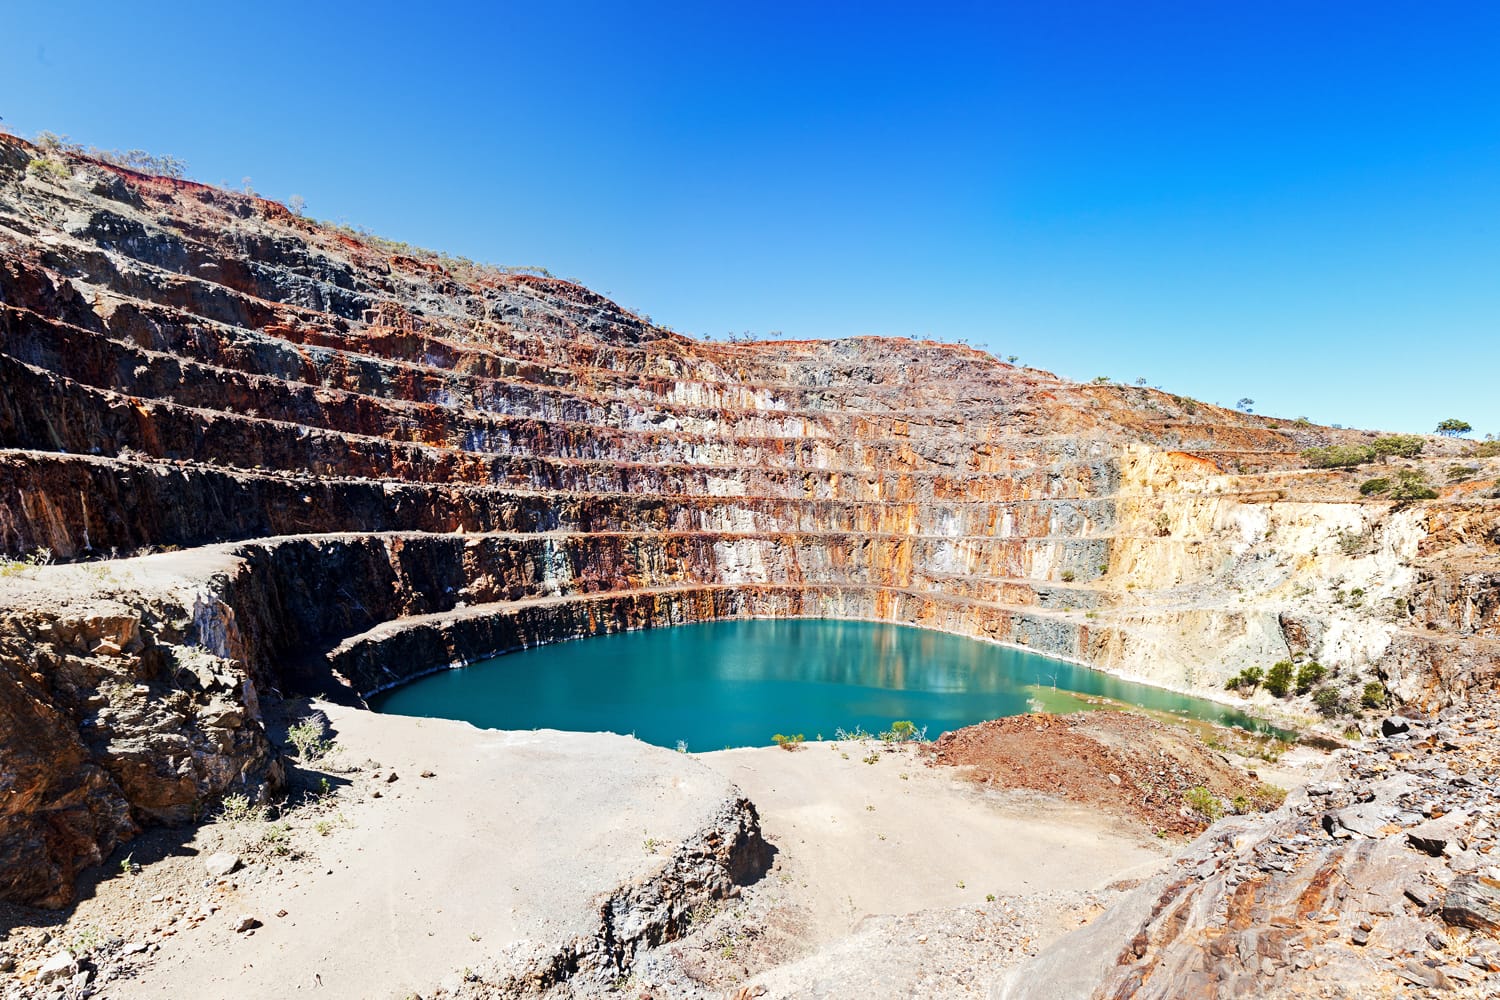 Mary Kathleen mine near Mount Isa in Australia